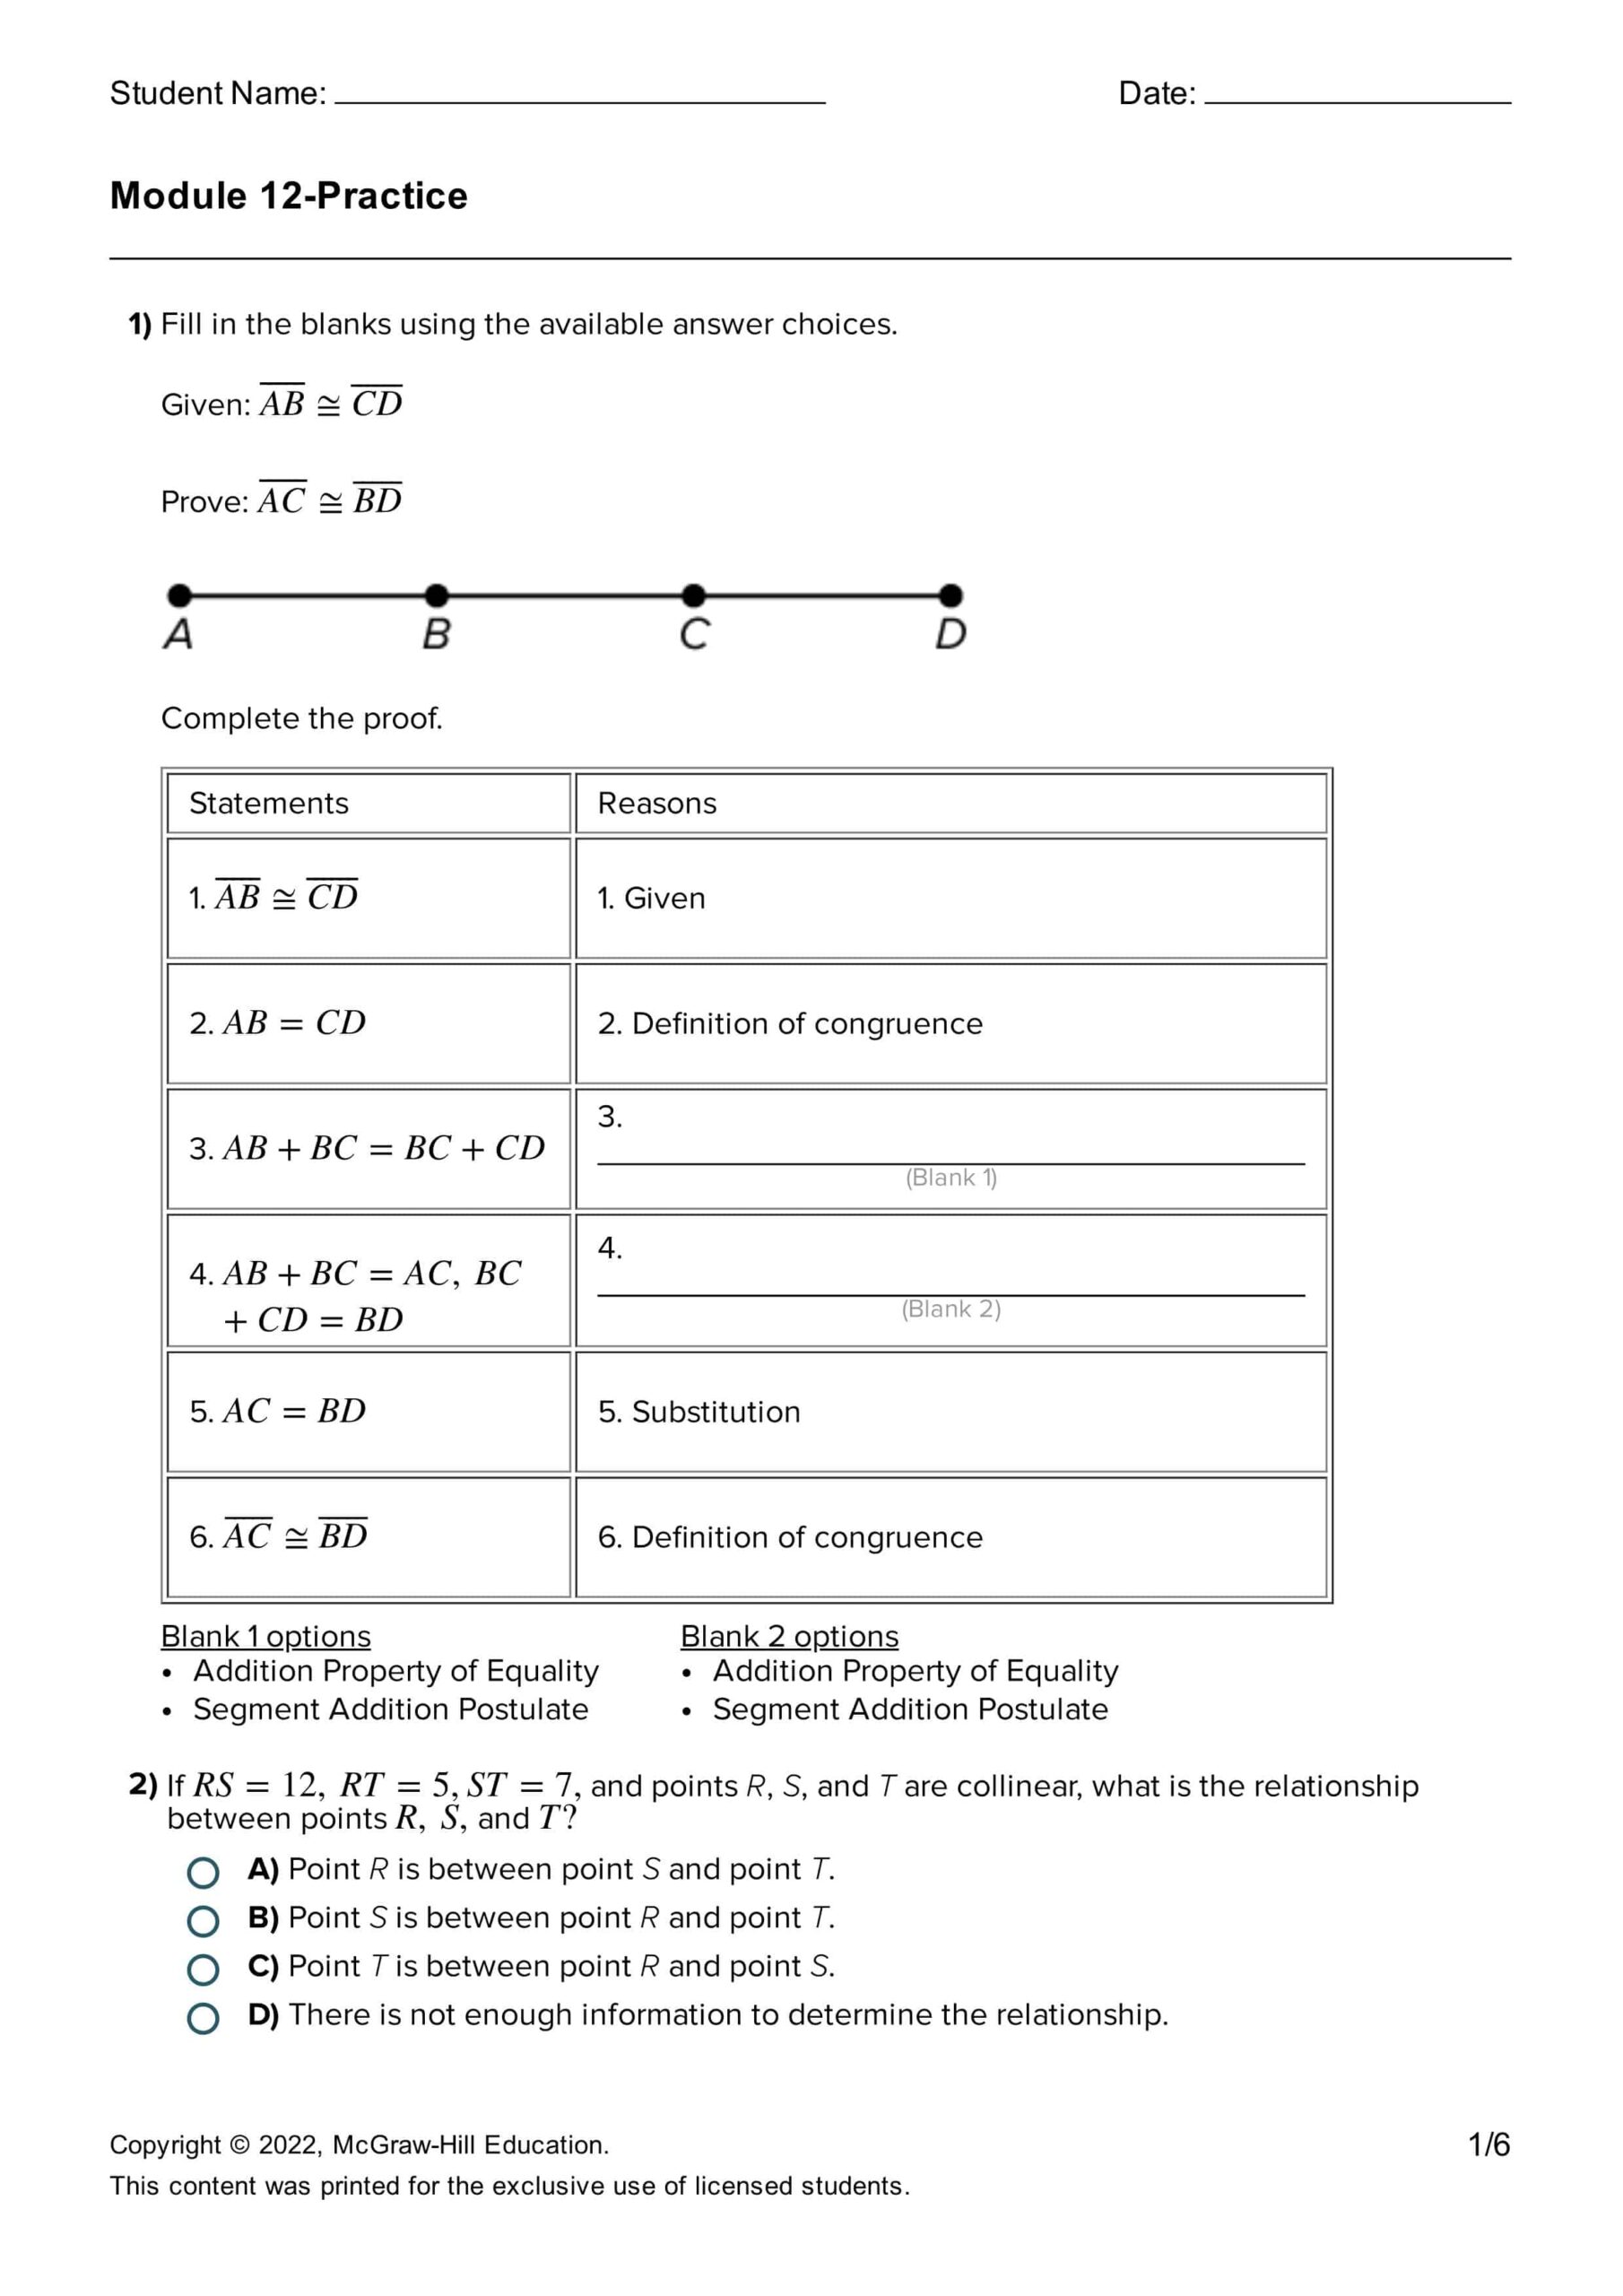 حل أوراق عمل الوحدة الثانية عشر بالإنجليزي الرياضيات المتكاملة الصف التاسع